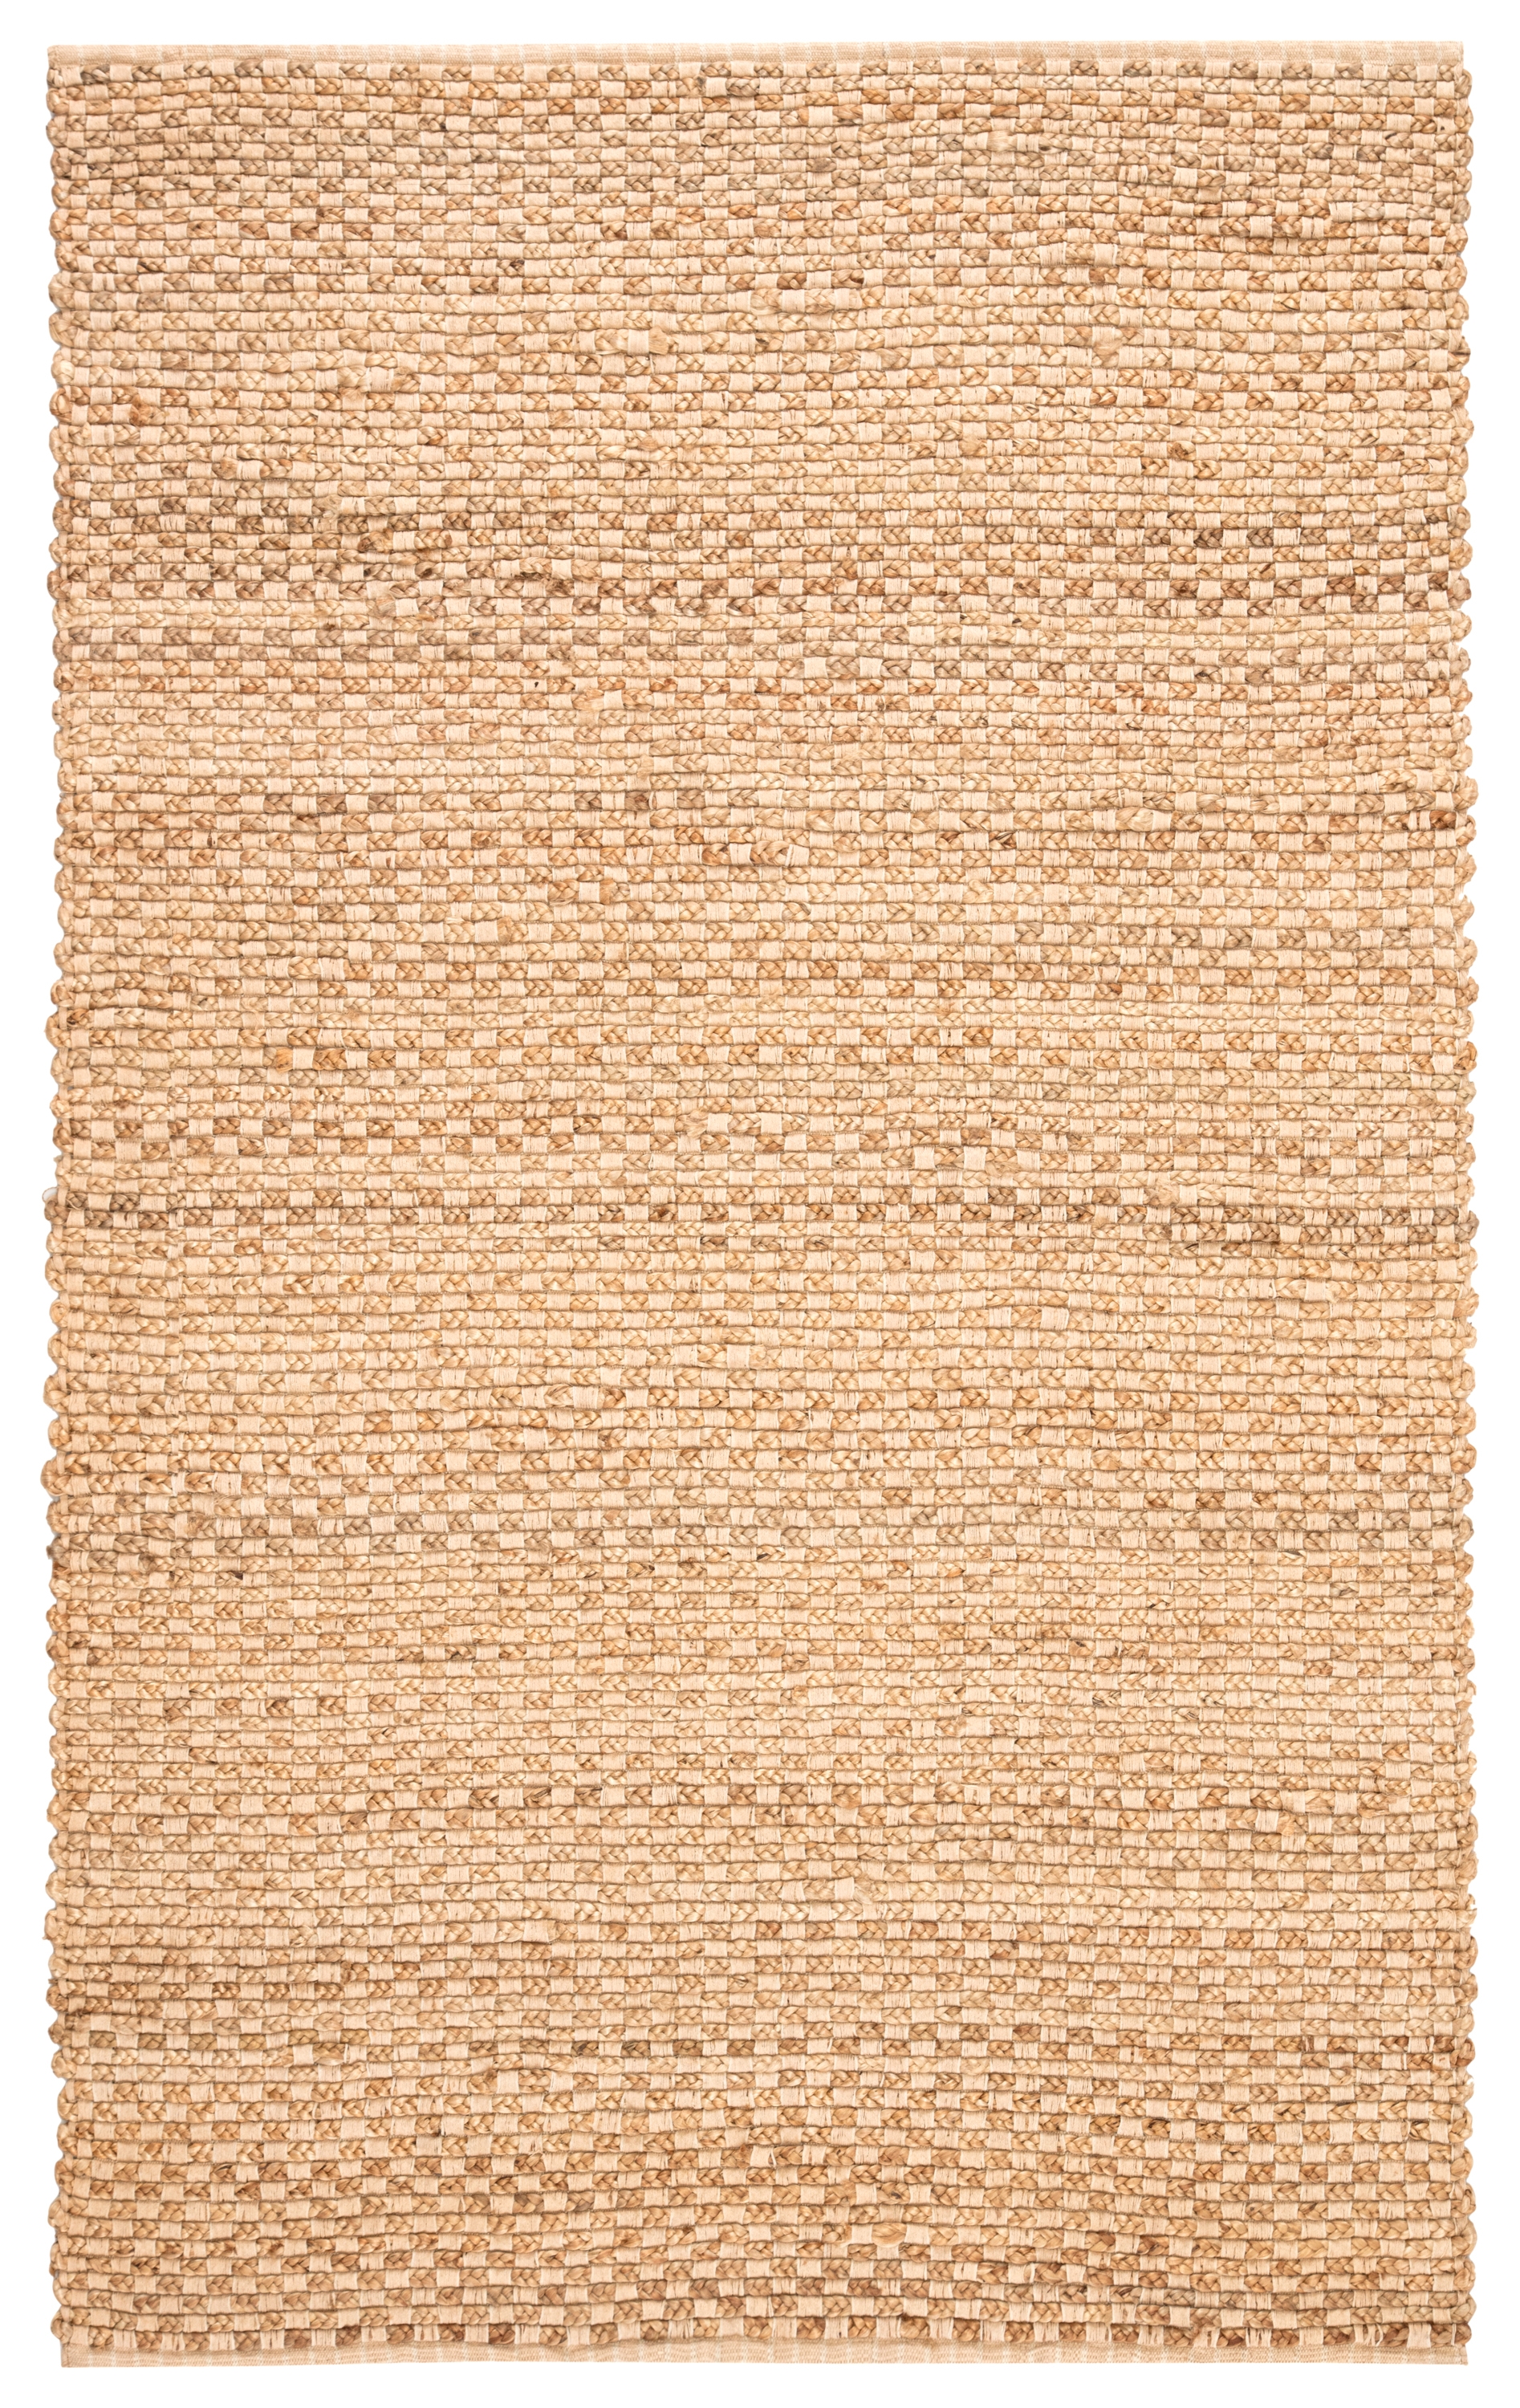 Brady Rug, 8' x 10' - Image 0